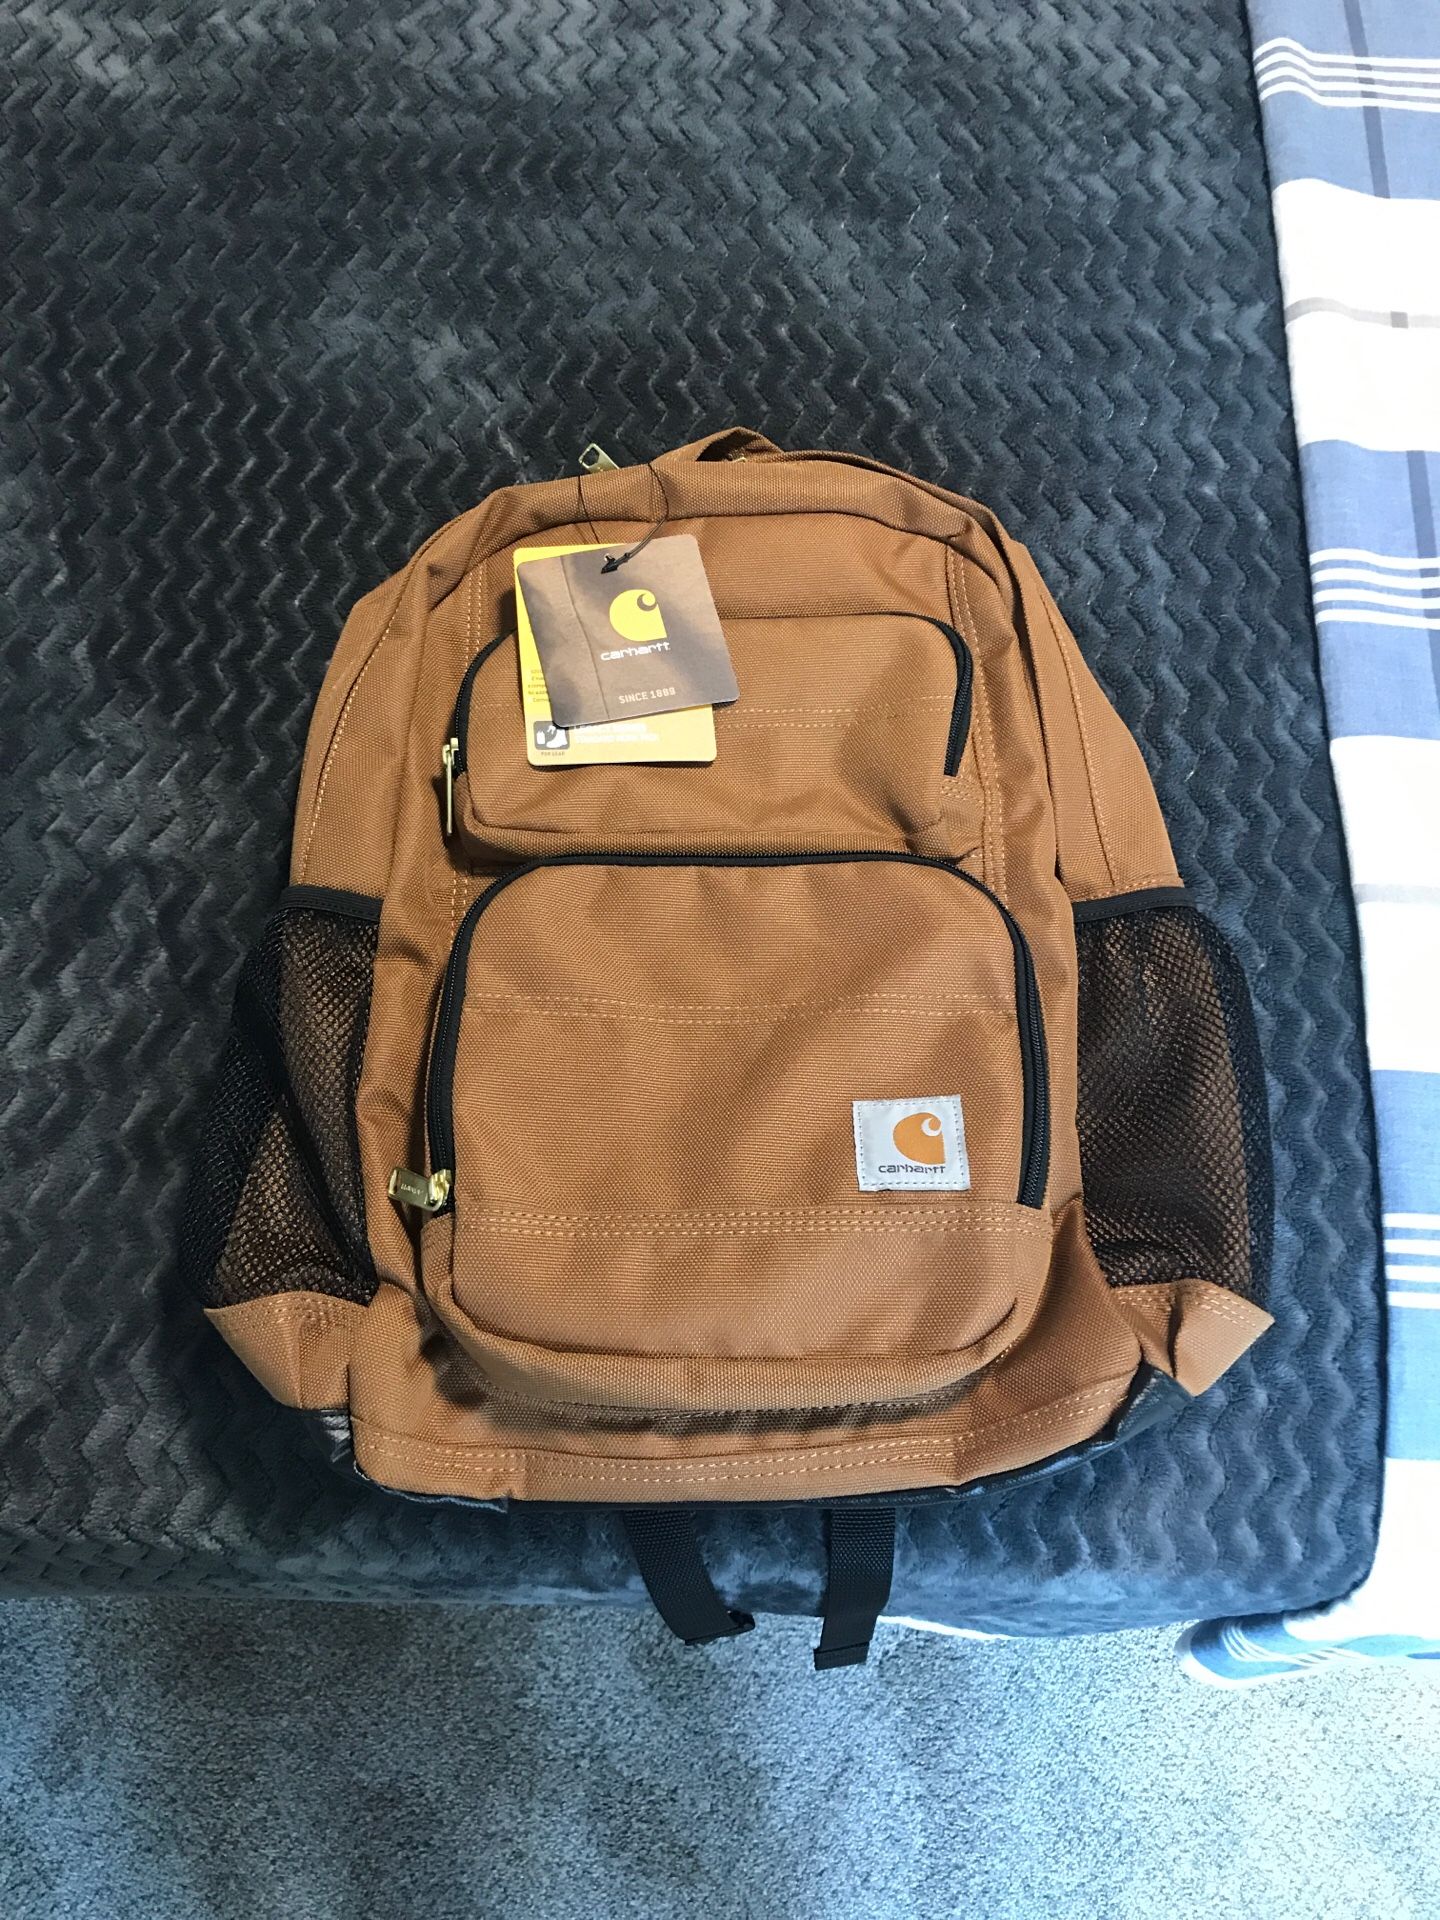 Carhart Backpack